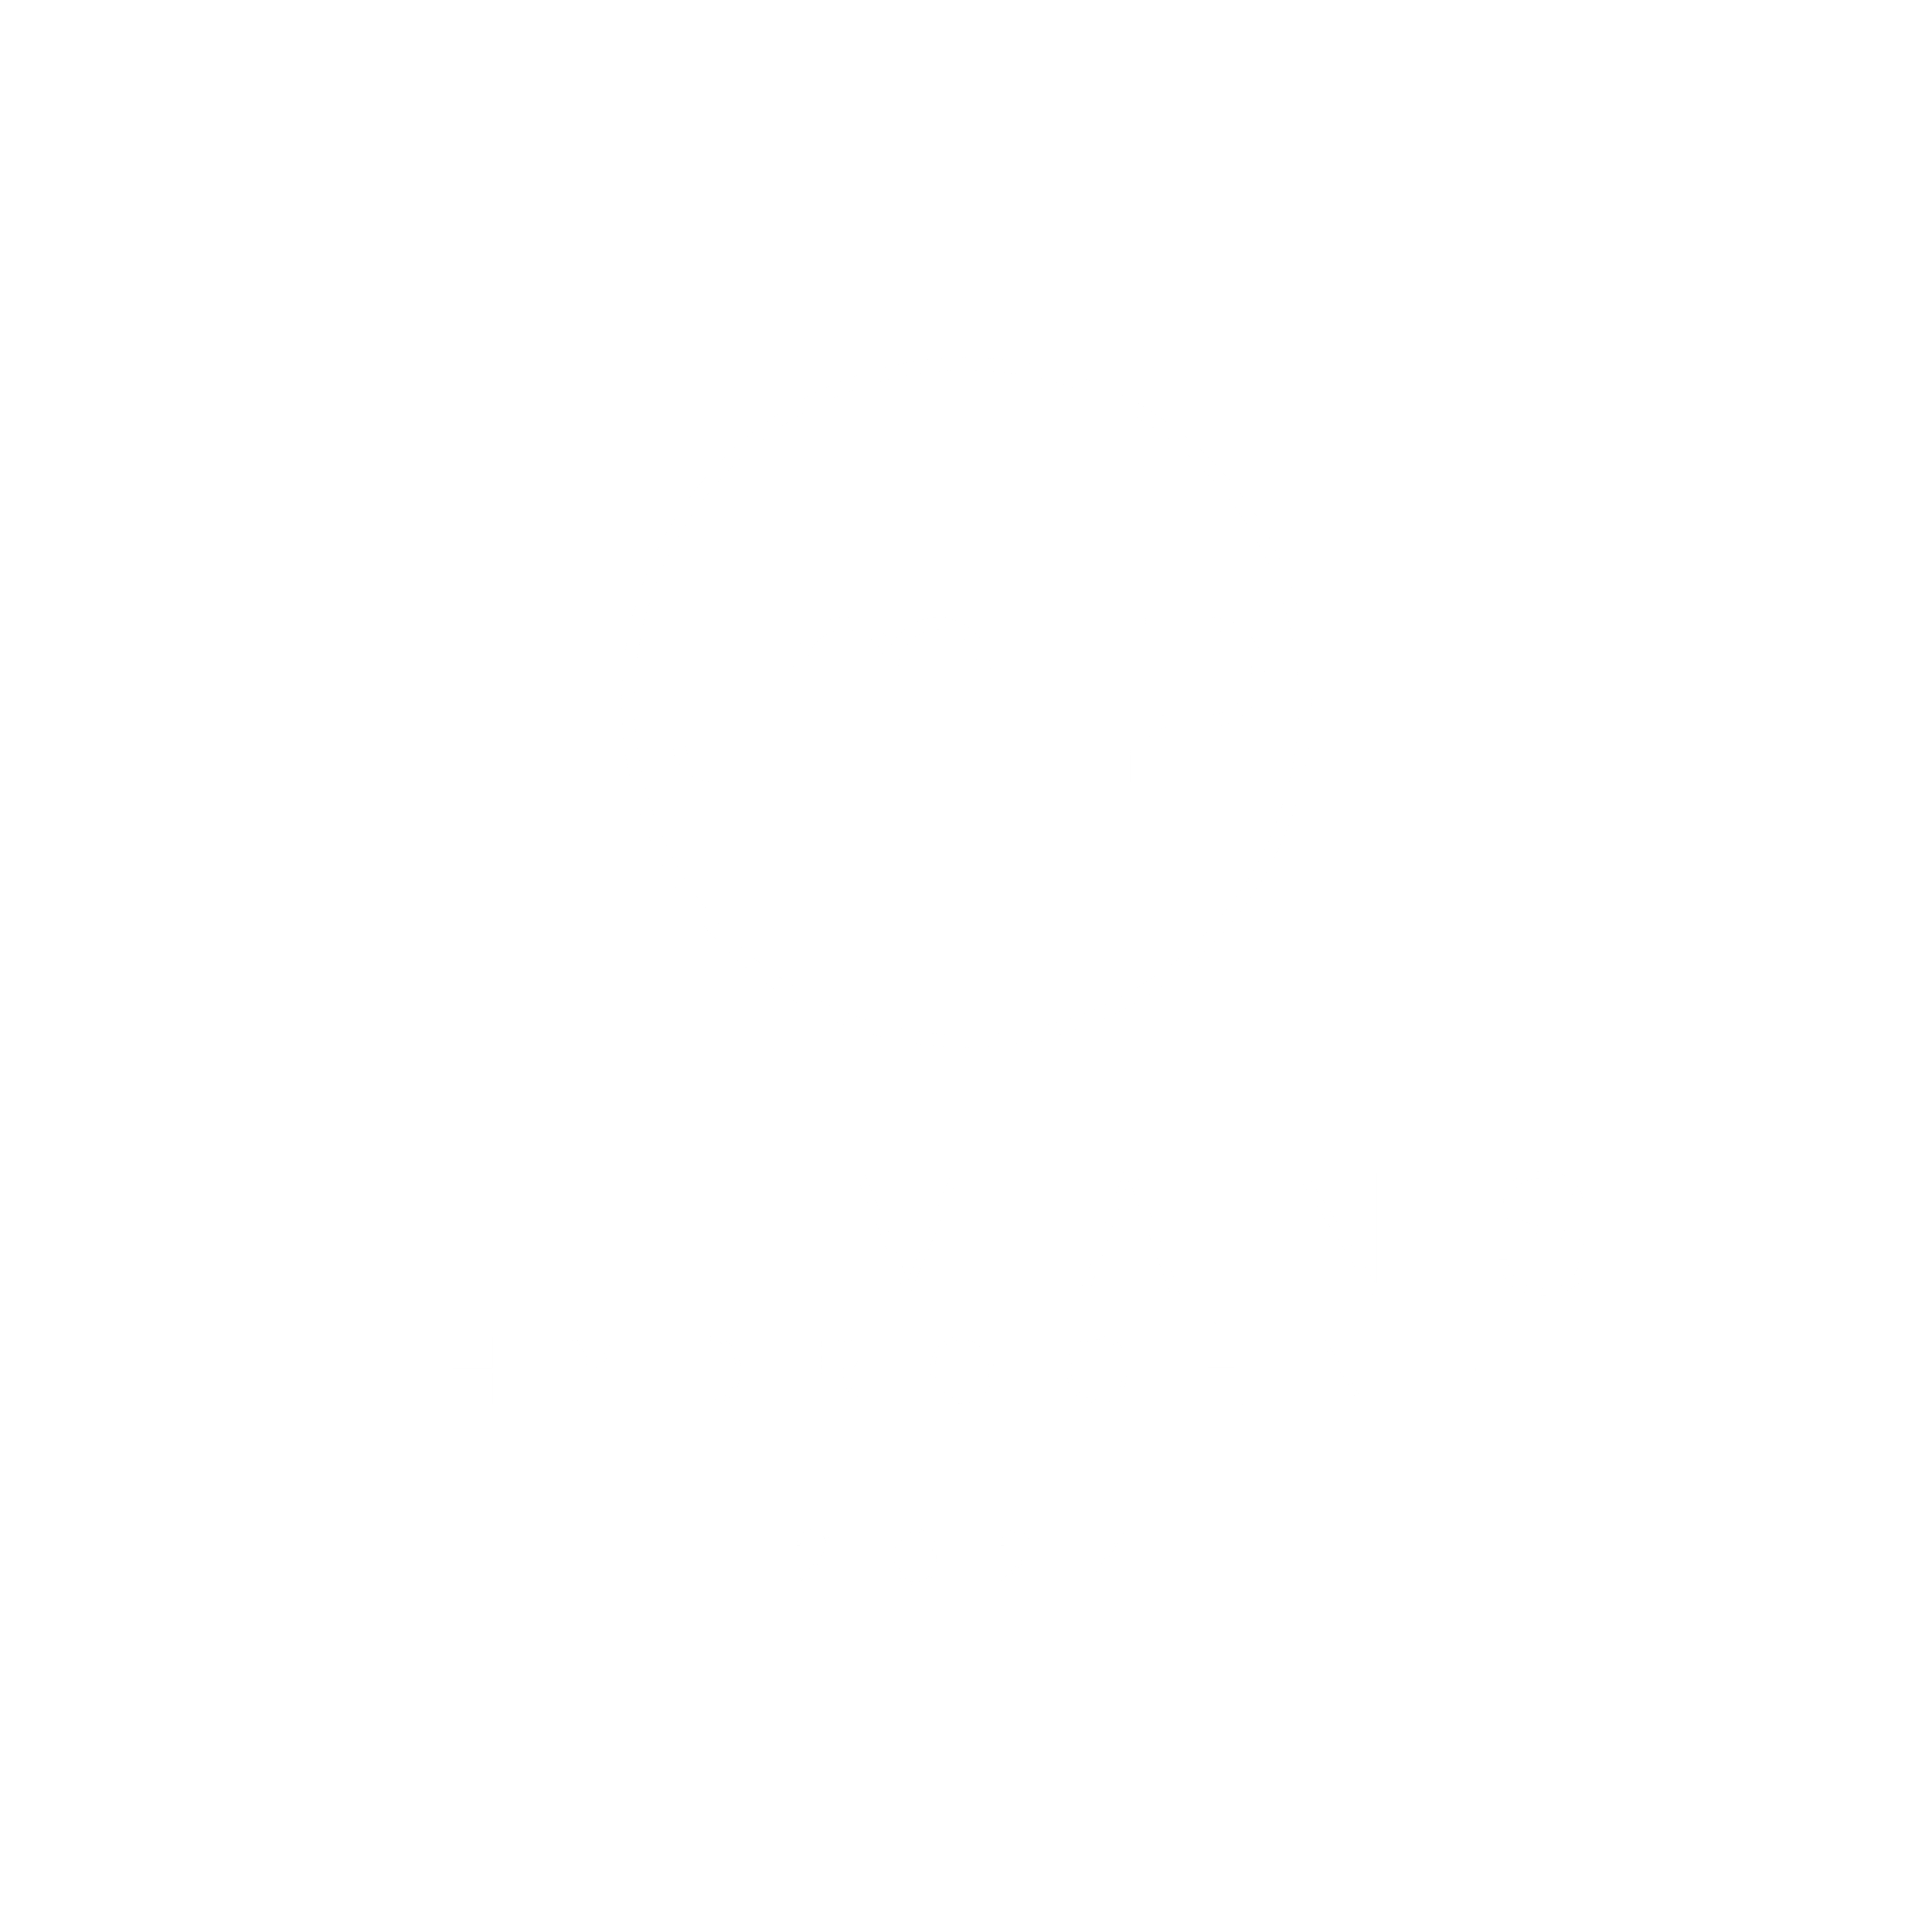 LOGO LHM2 2024